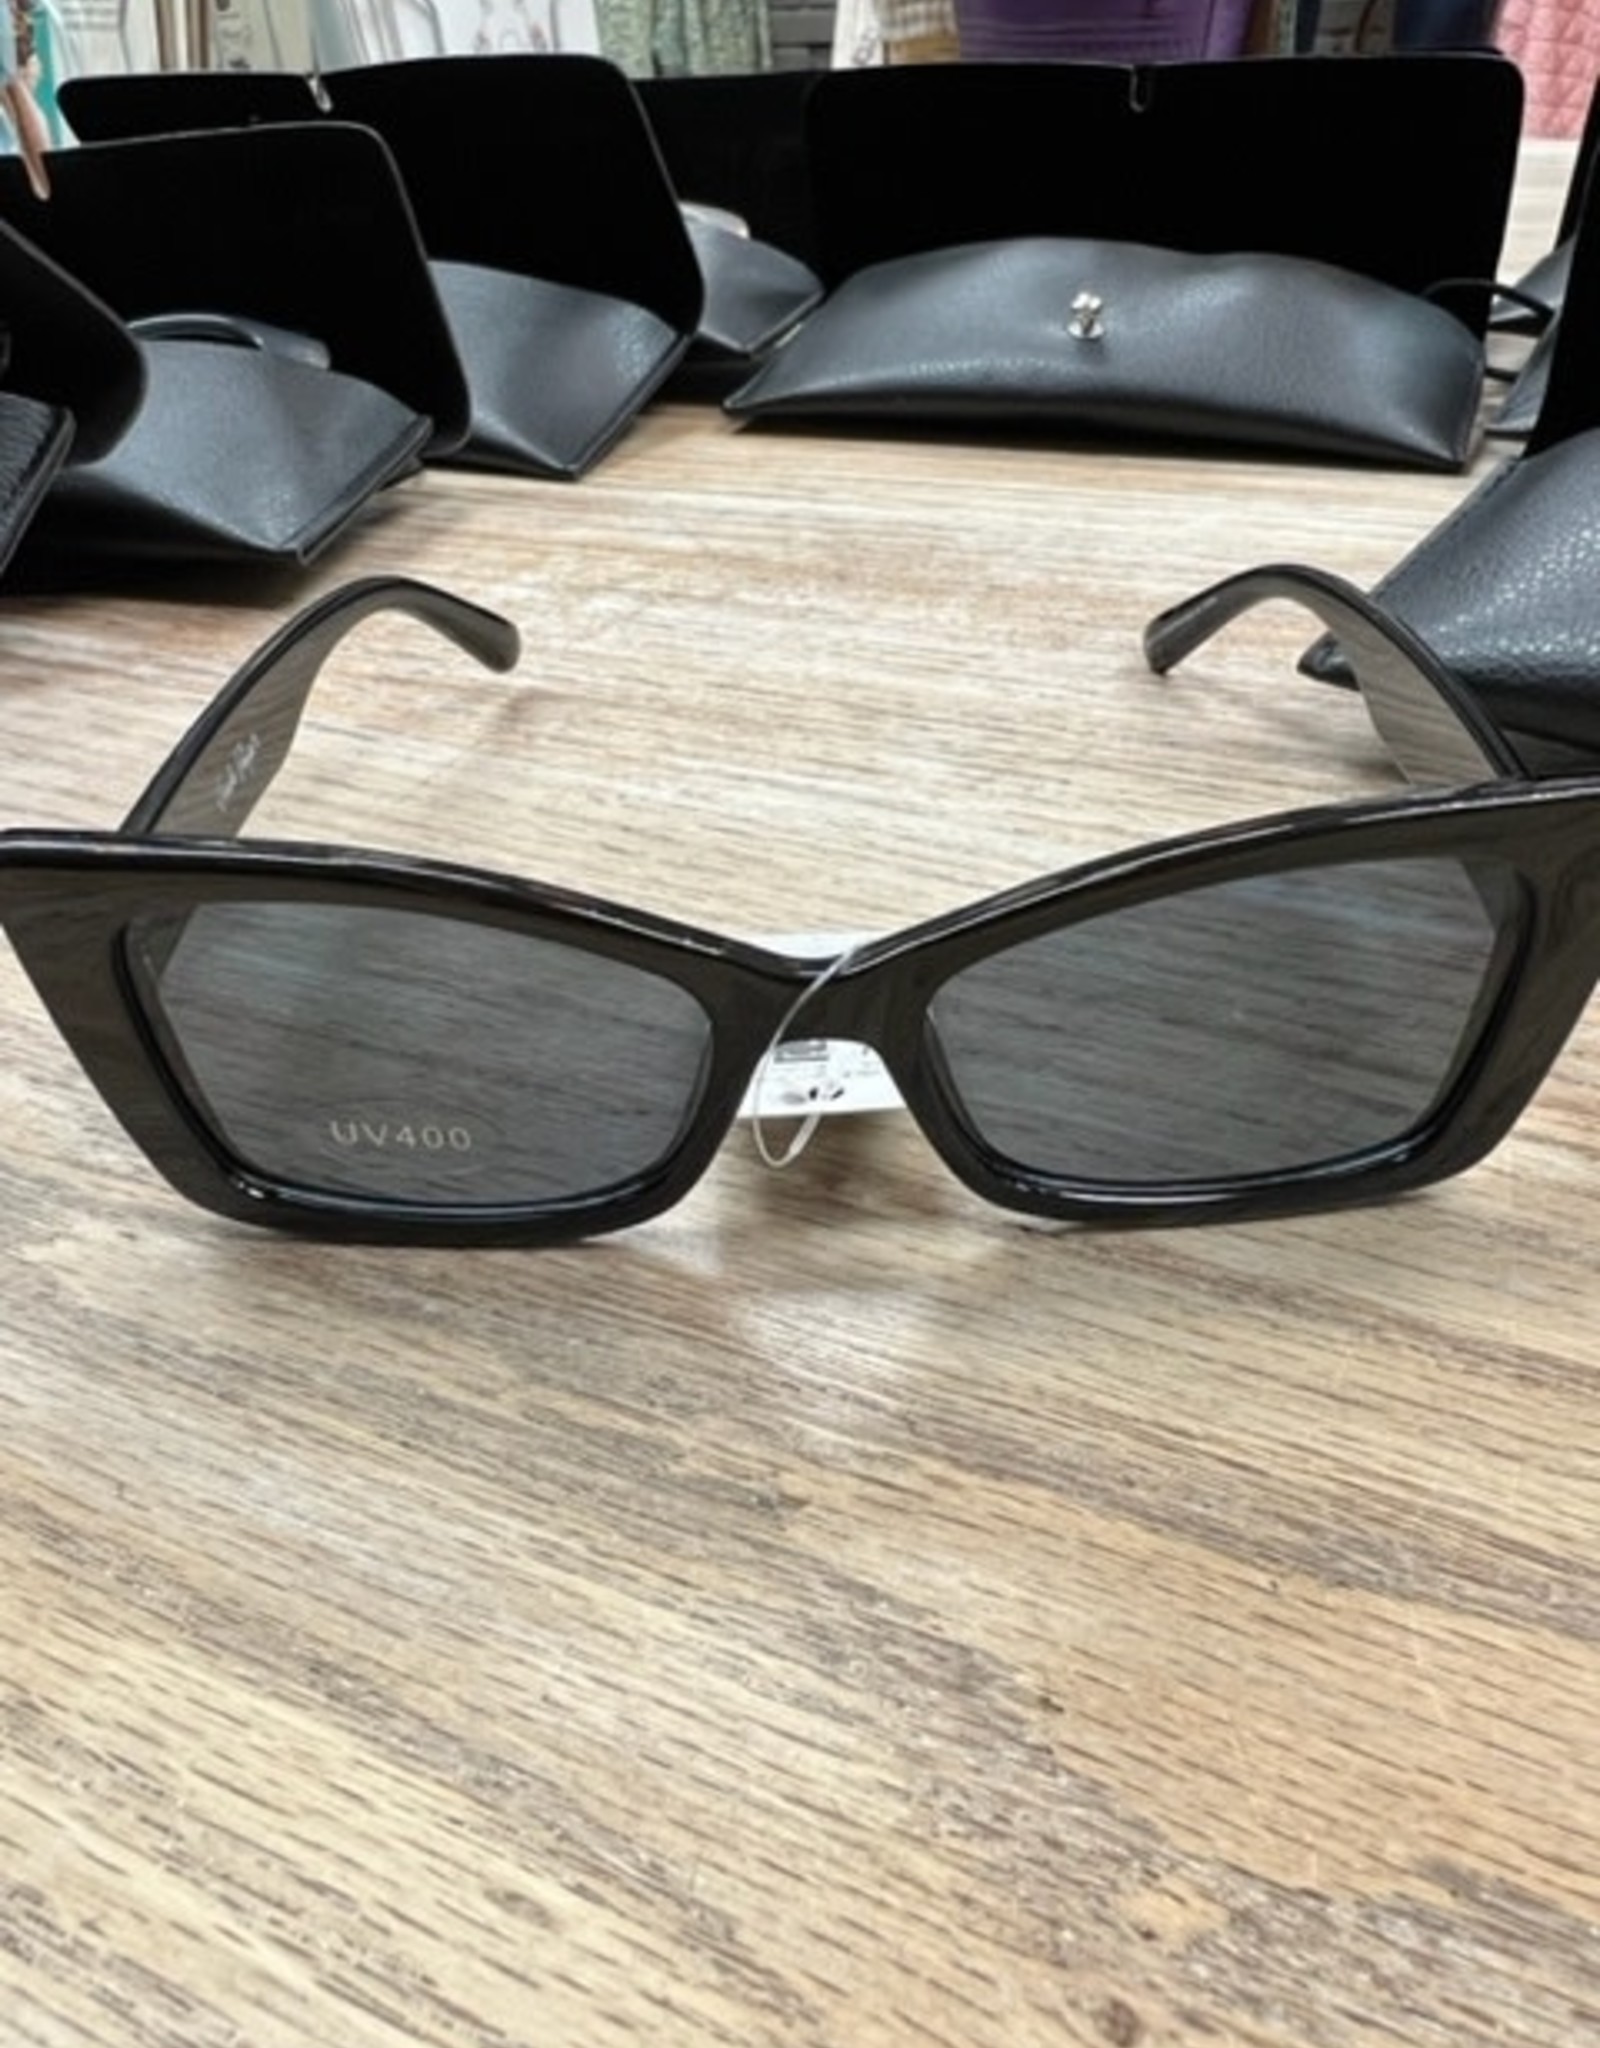 Sunglasses Sunglasses w/ Case